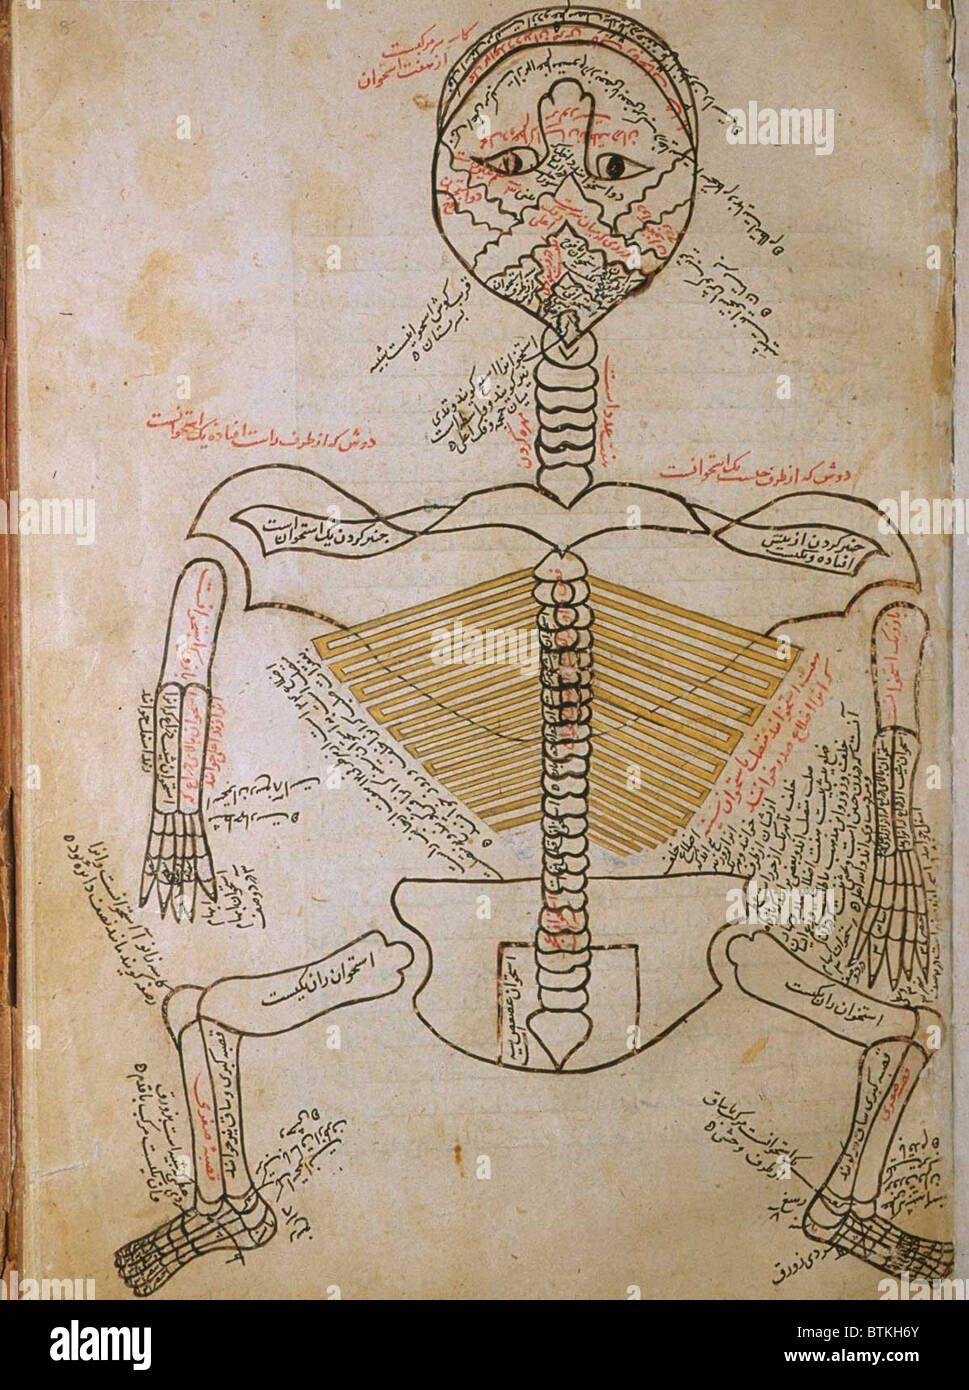 Lo scheletro umano, da MANSUR'S ANATOMY, dal persiano di studioso e di medico, Mansur ibn Ilyas (ca. 1370-1423). Lo scheletro è visto da dietro con la testa hyperextended in modo che la bocca è nella parte superiore della pagina. Ca. Xv o inizio del XVI secolo. Foto Stock